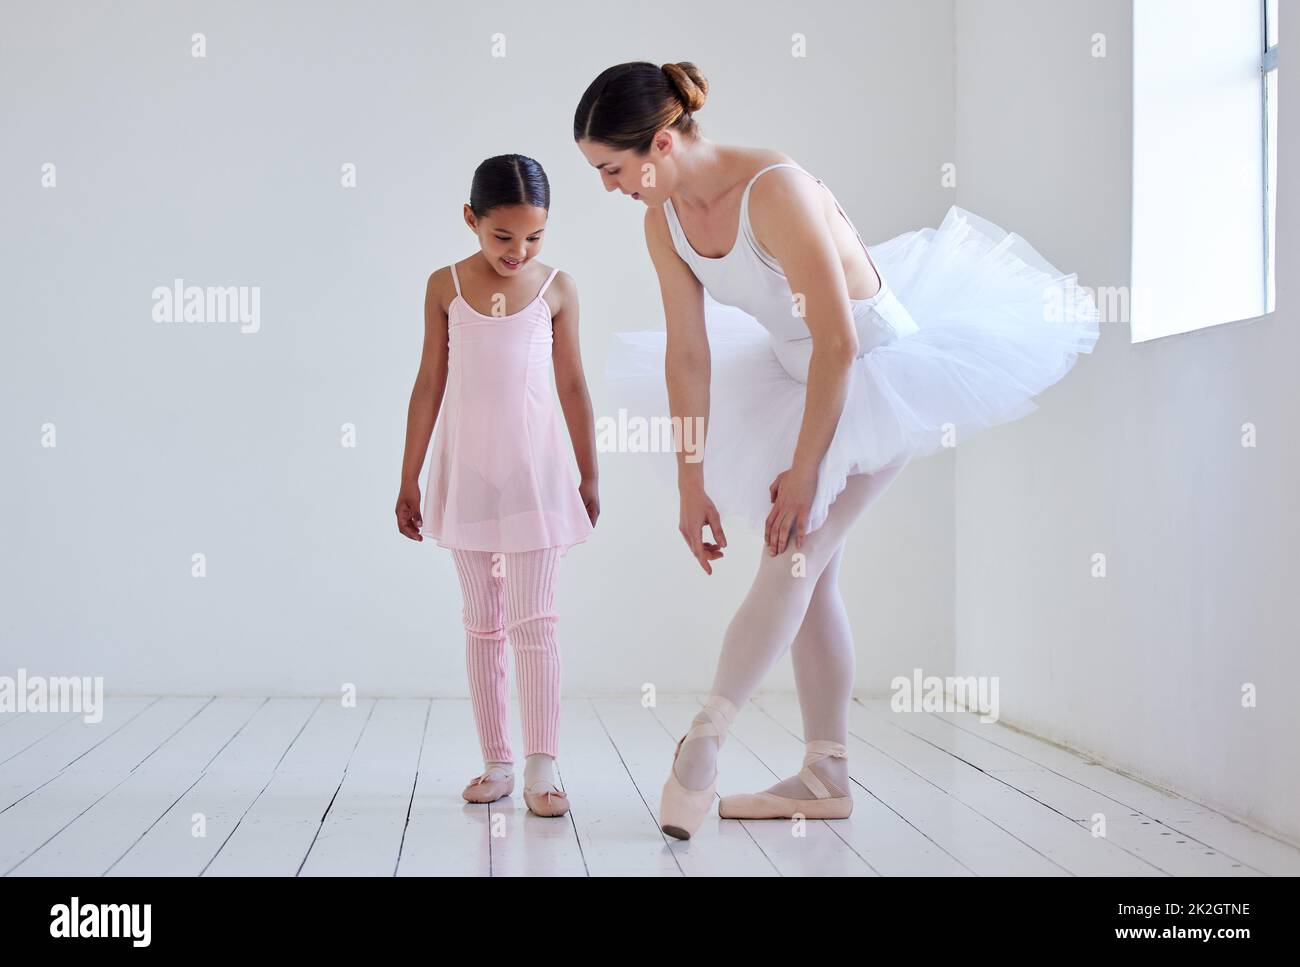 Immagini Stock - Bambina Infantile Che Indossa Bianco Tutu Ballerina E  Pantofole A Balletto, Ballando Su Un Palco Di Un Teatro. Image 78997681